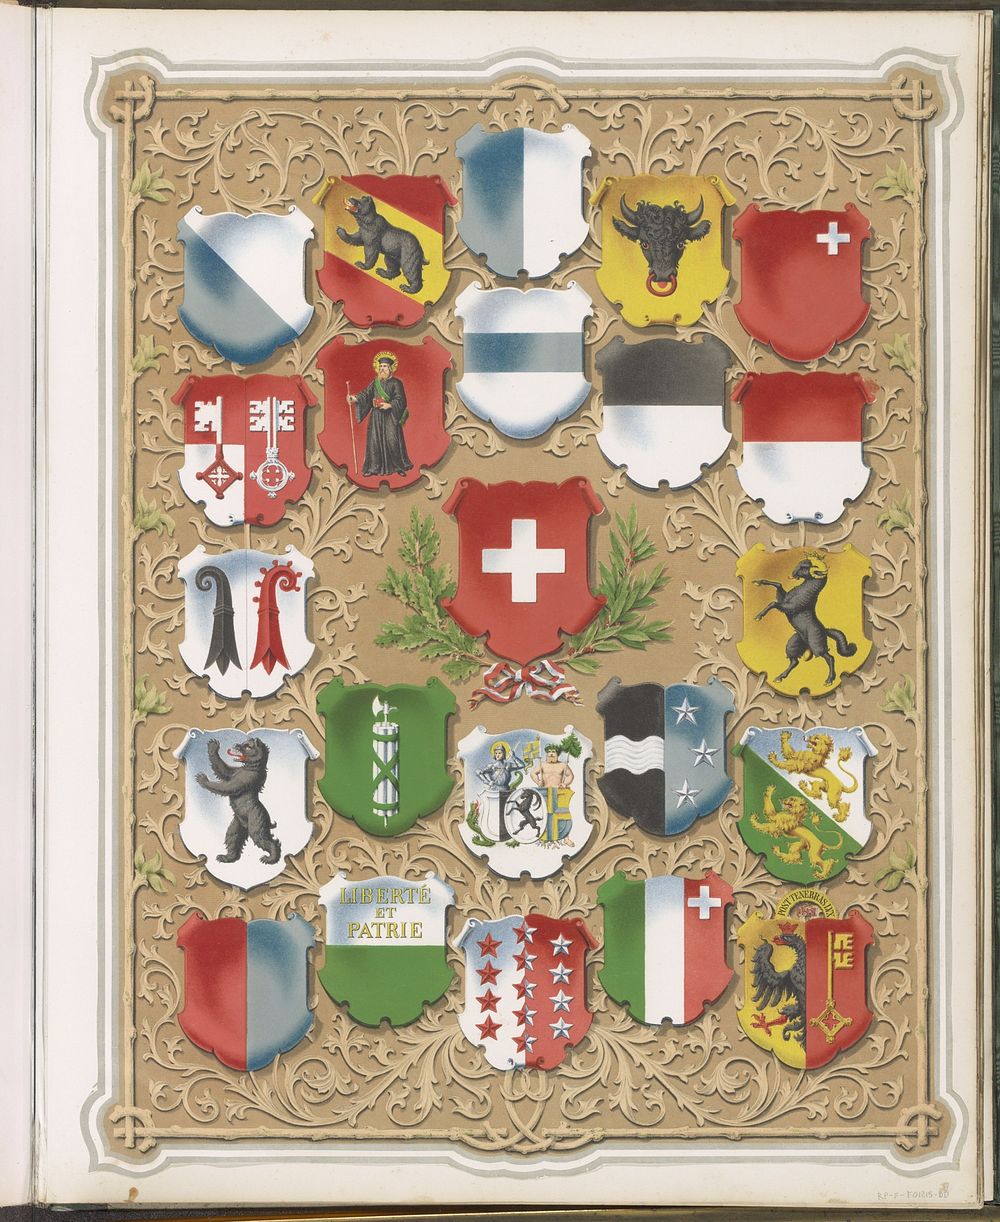 Overzicht van wapenschilden van Zwitserland en 22 kantons (c. 1850 - c. 1875) by anonymous